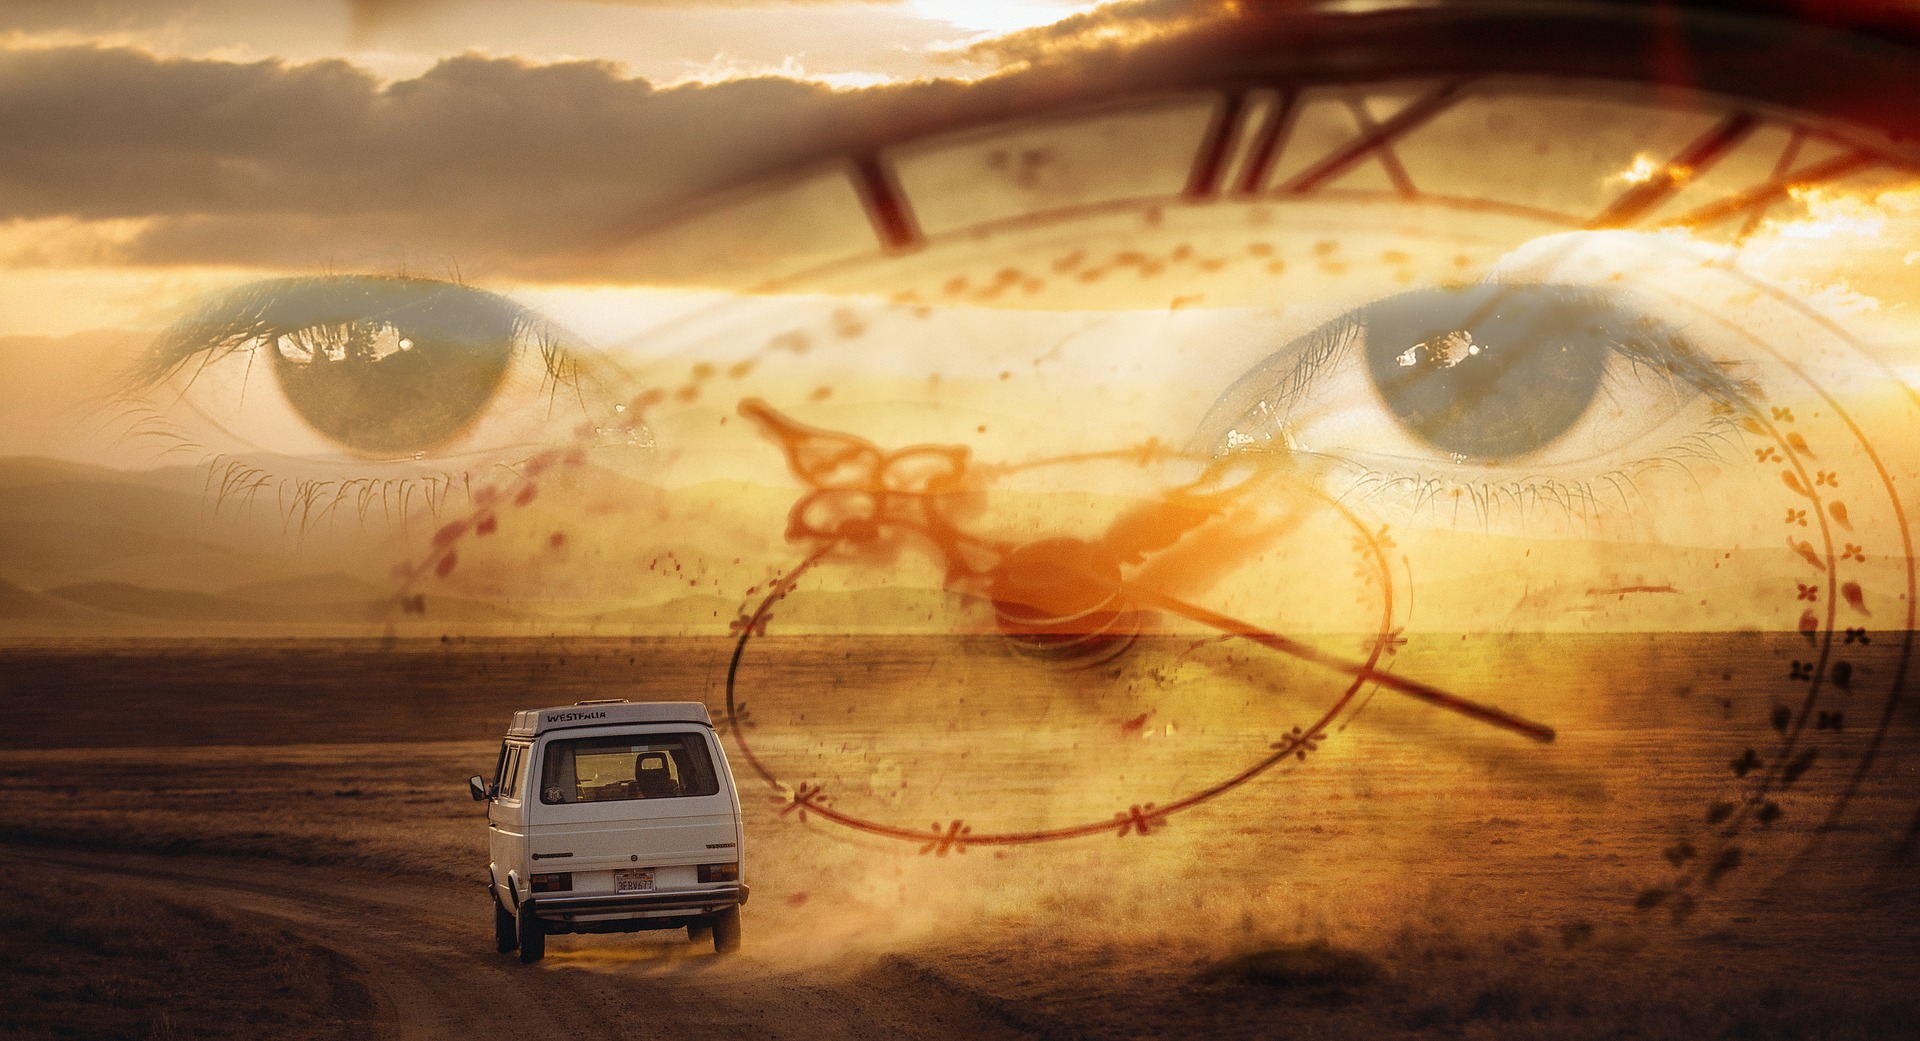 Time travel with car through desert, eyes watching